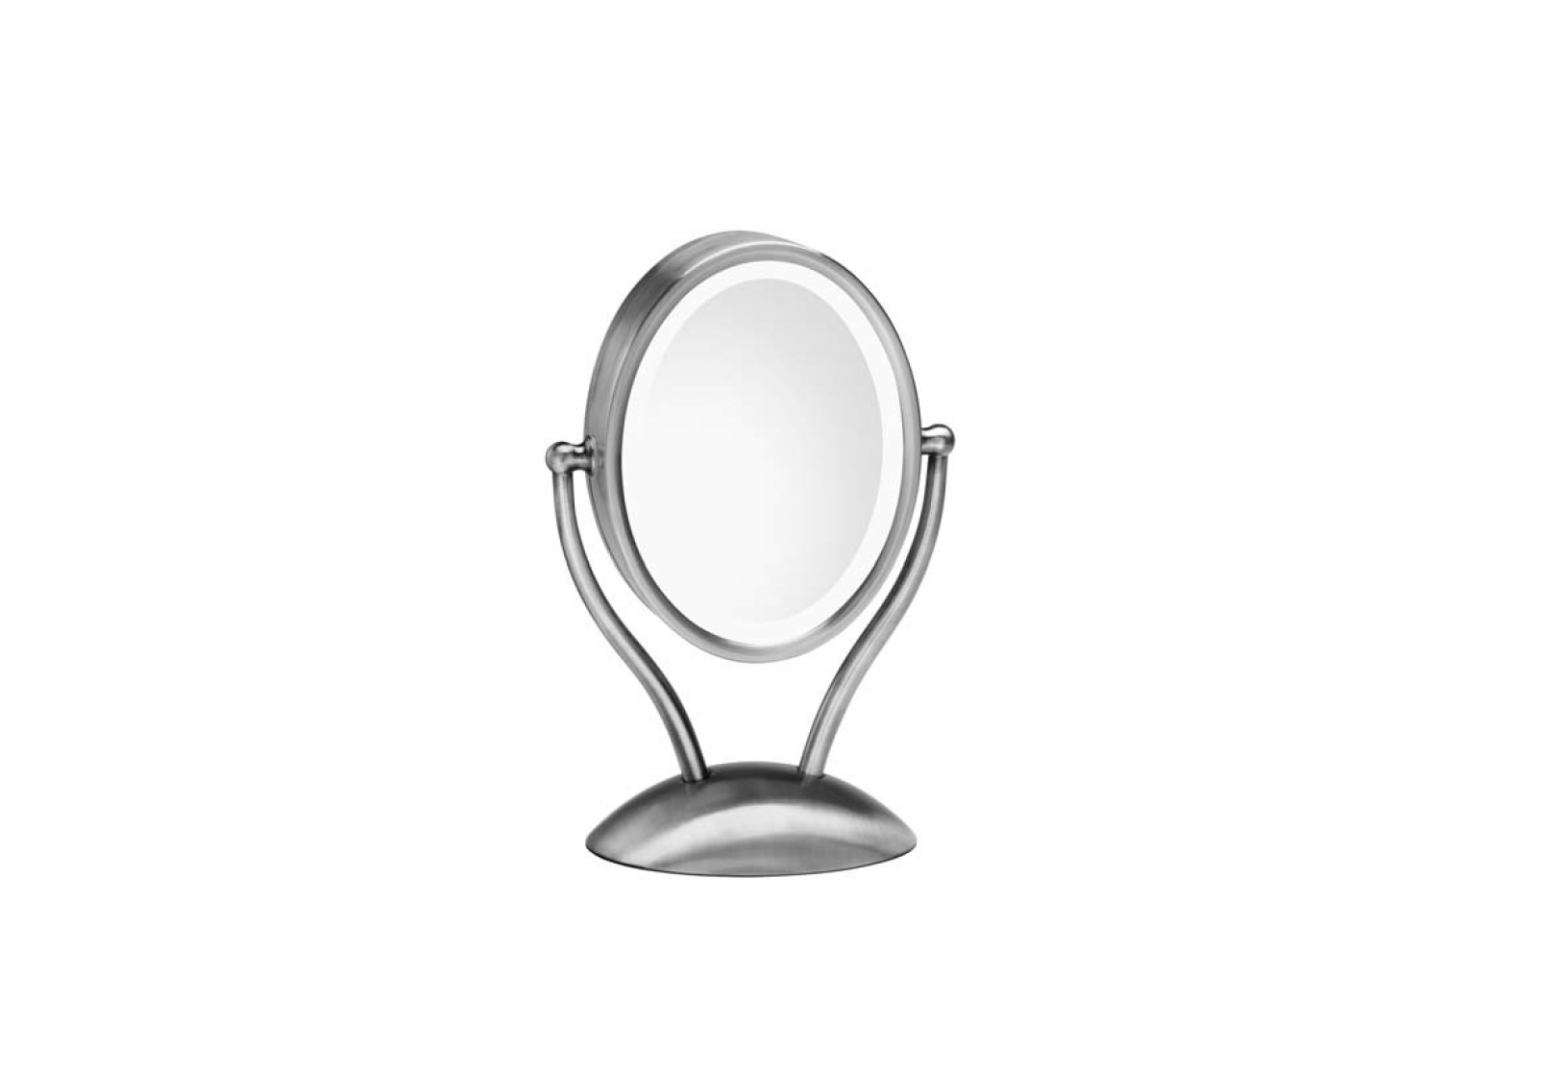 Homedics M-9005 illuminated beauty mirror spa REFLECTIVES Instruction Manual and Warranty Information